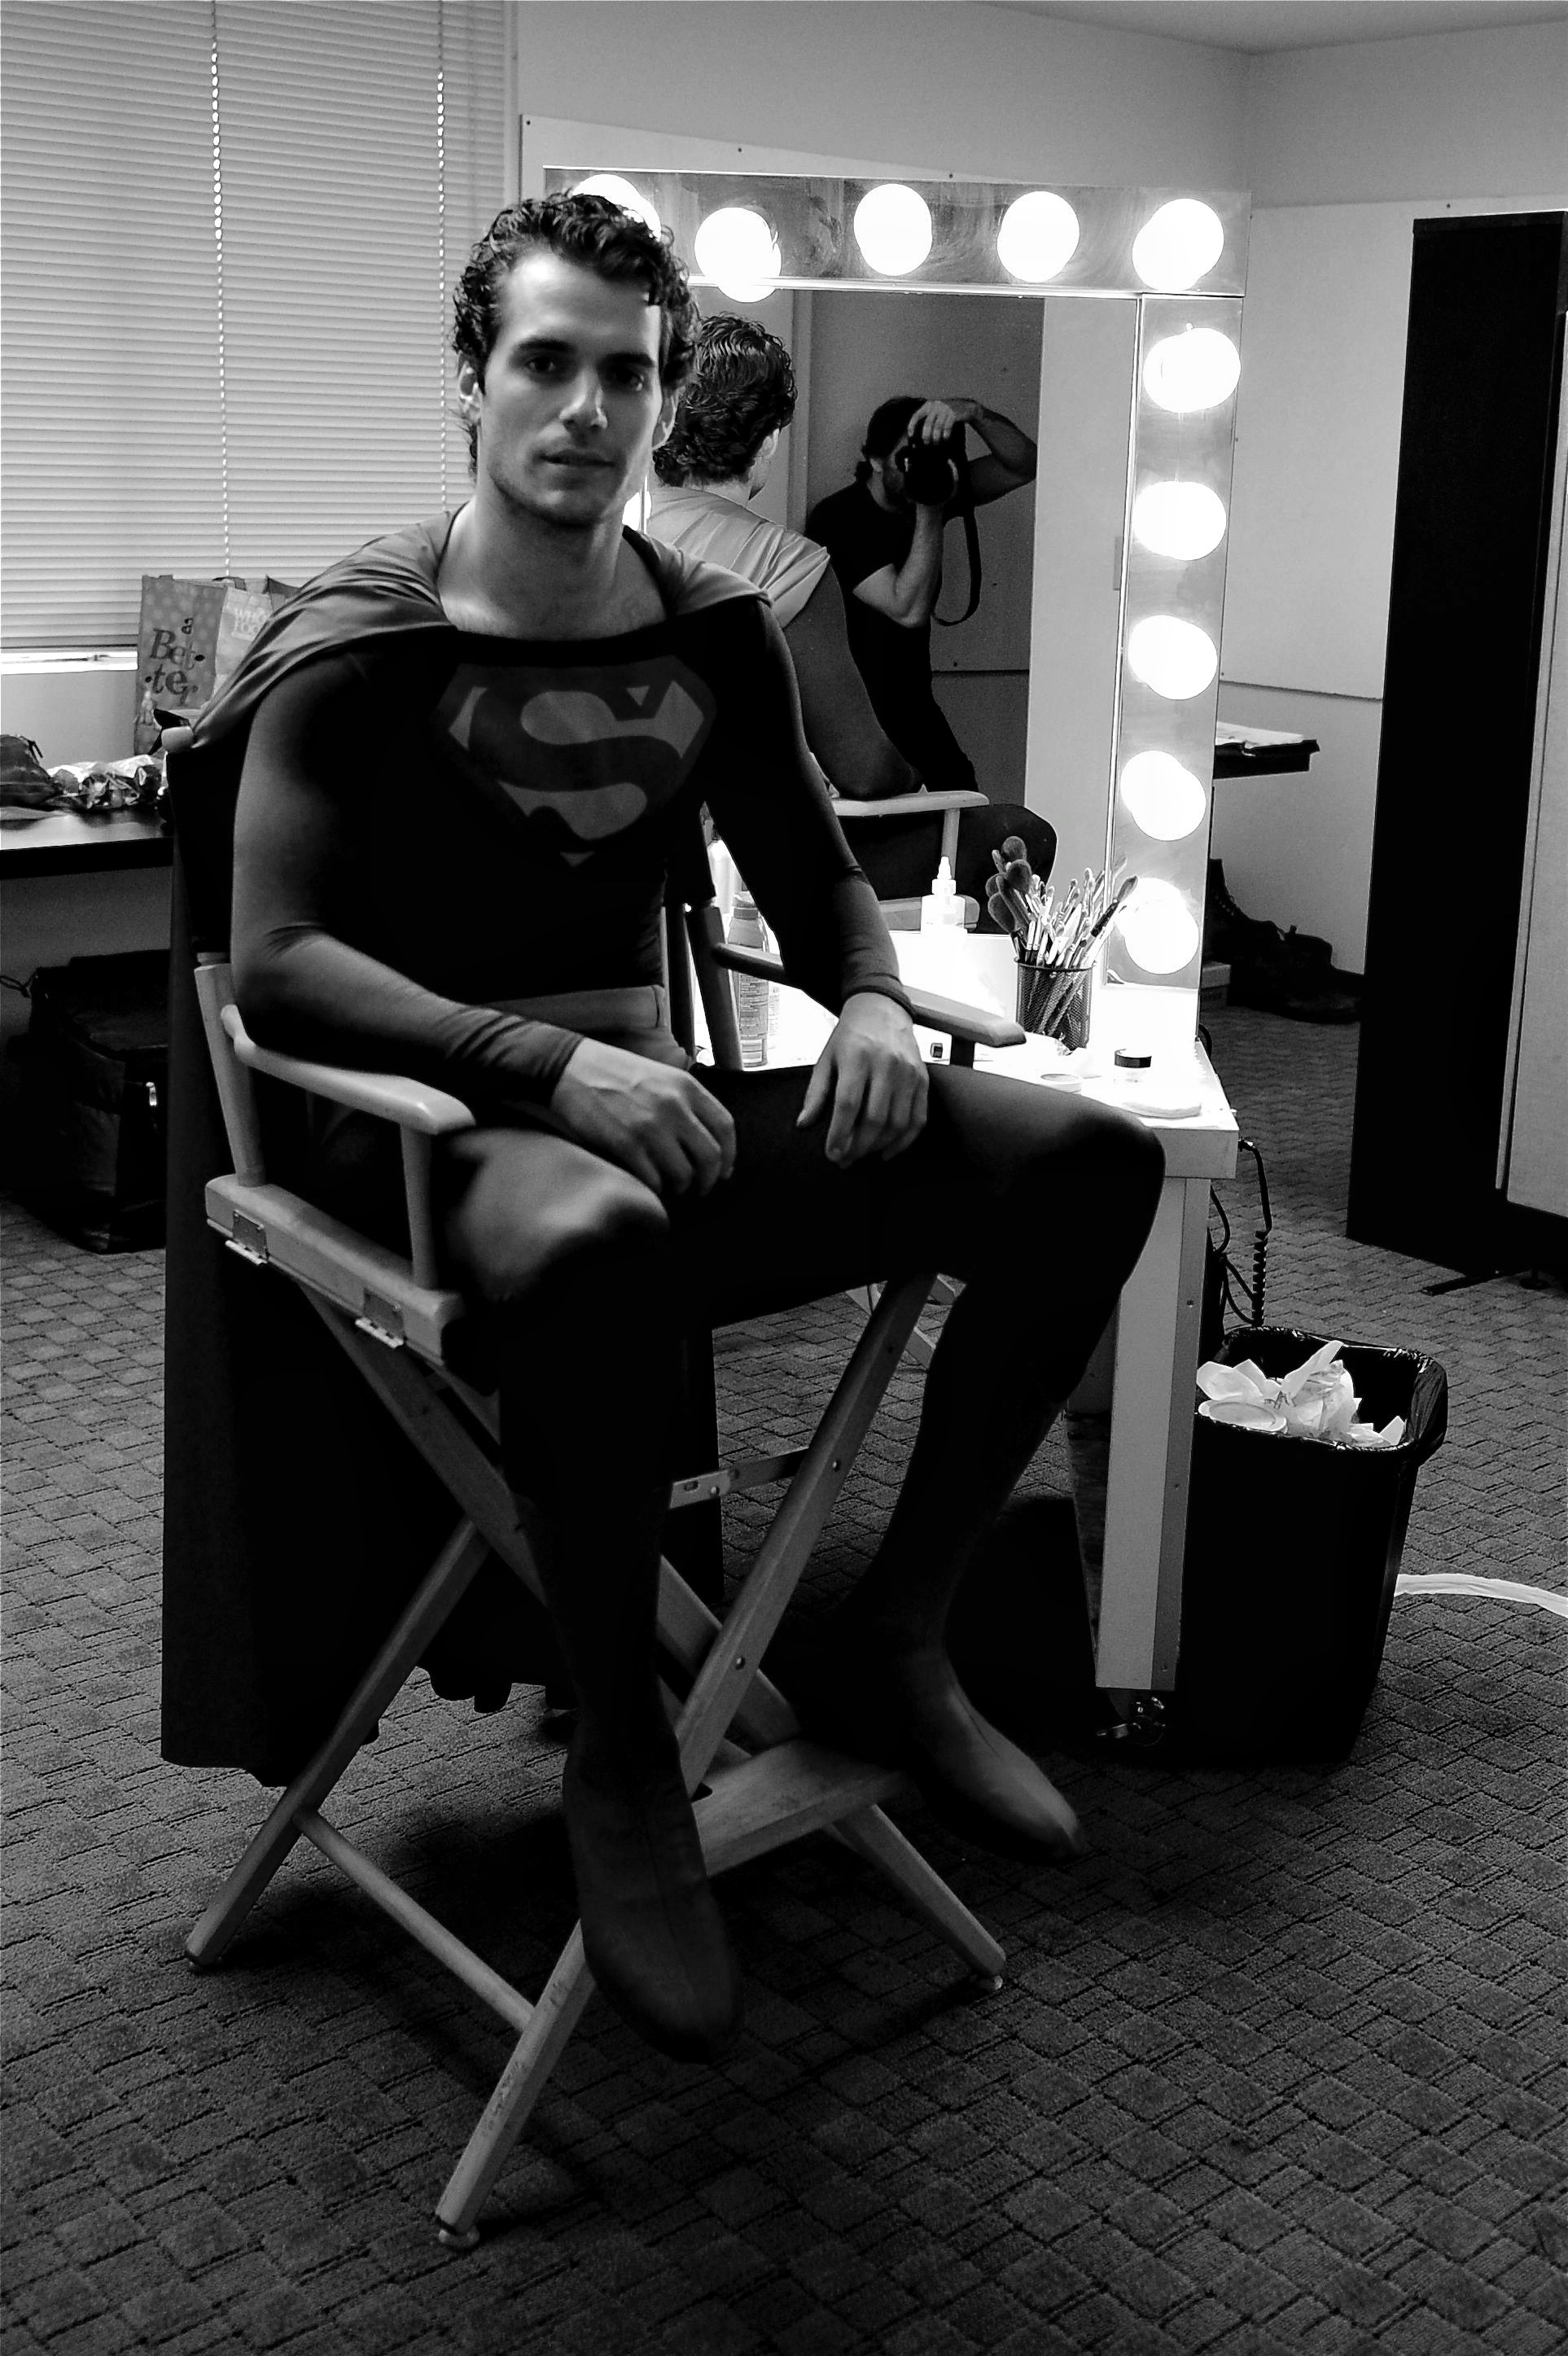 Henry Cavill, o Superman, surge com visual diferente para novo filme